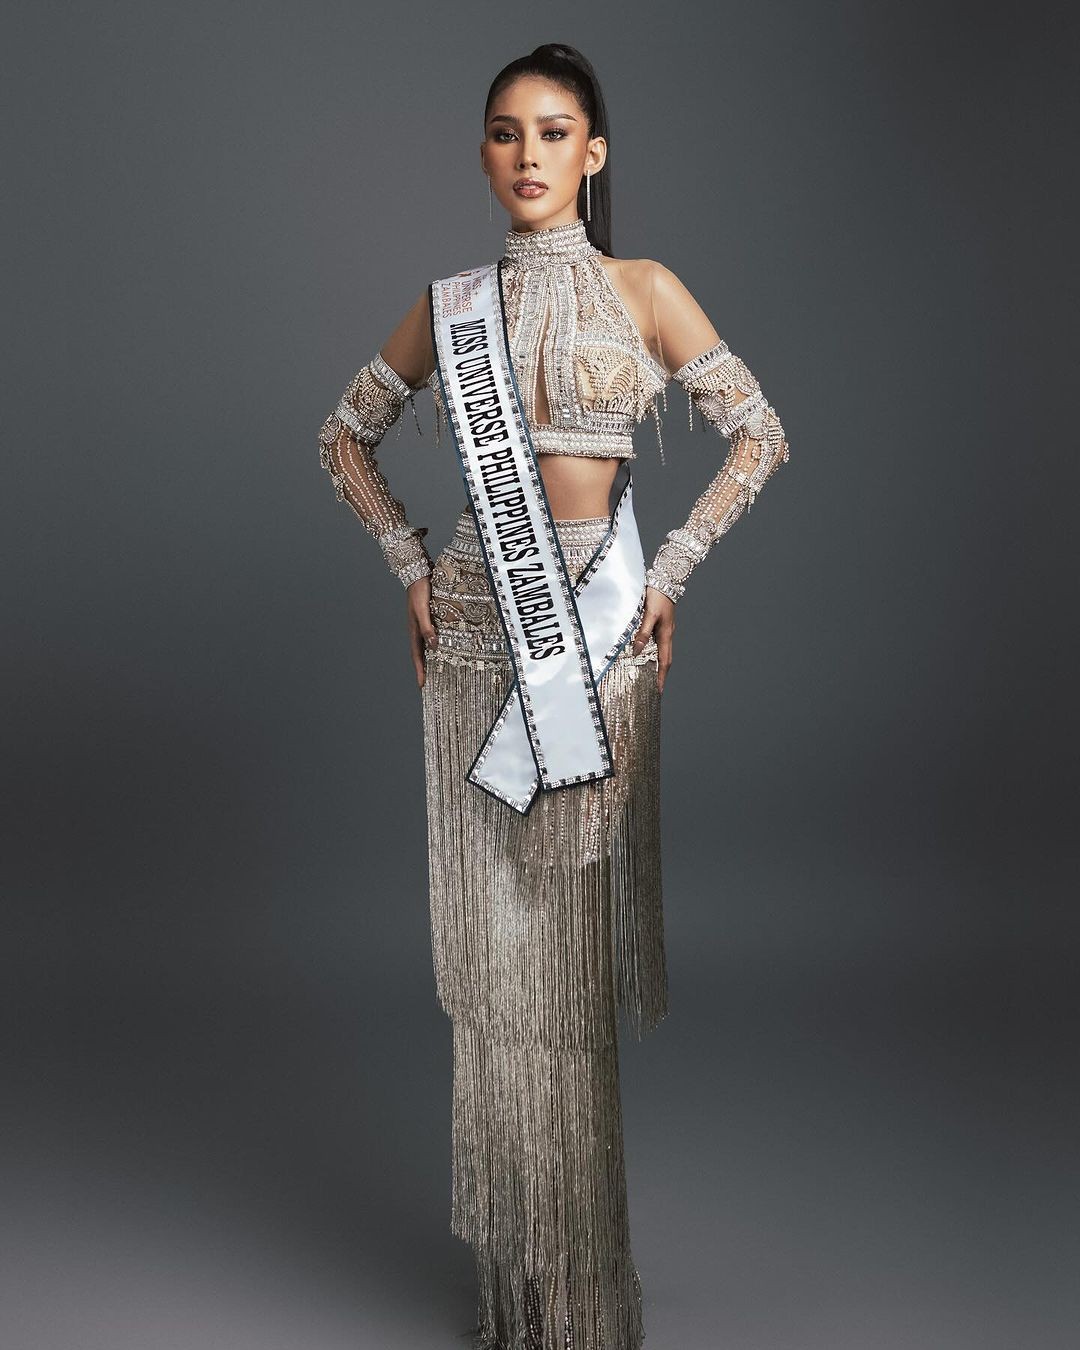 View - Người đẹp có vòng eo 51 cm tại Hoa hậu Hoàn vũ Philippines